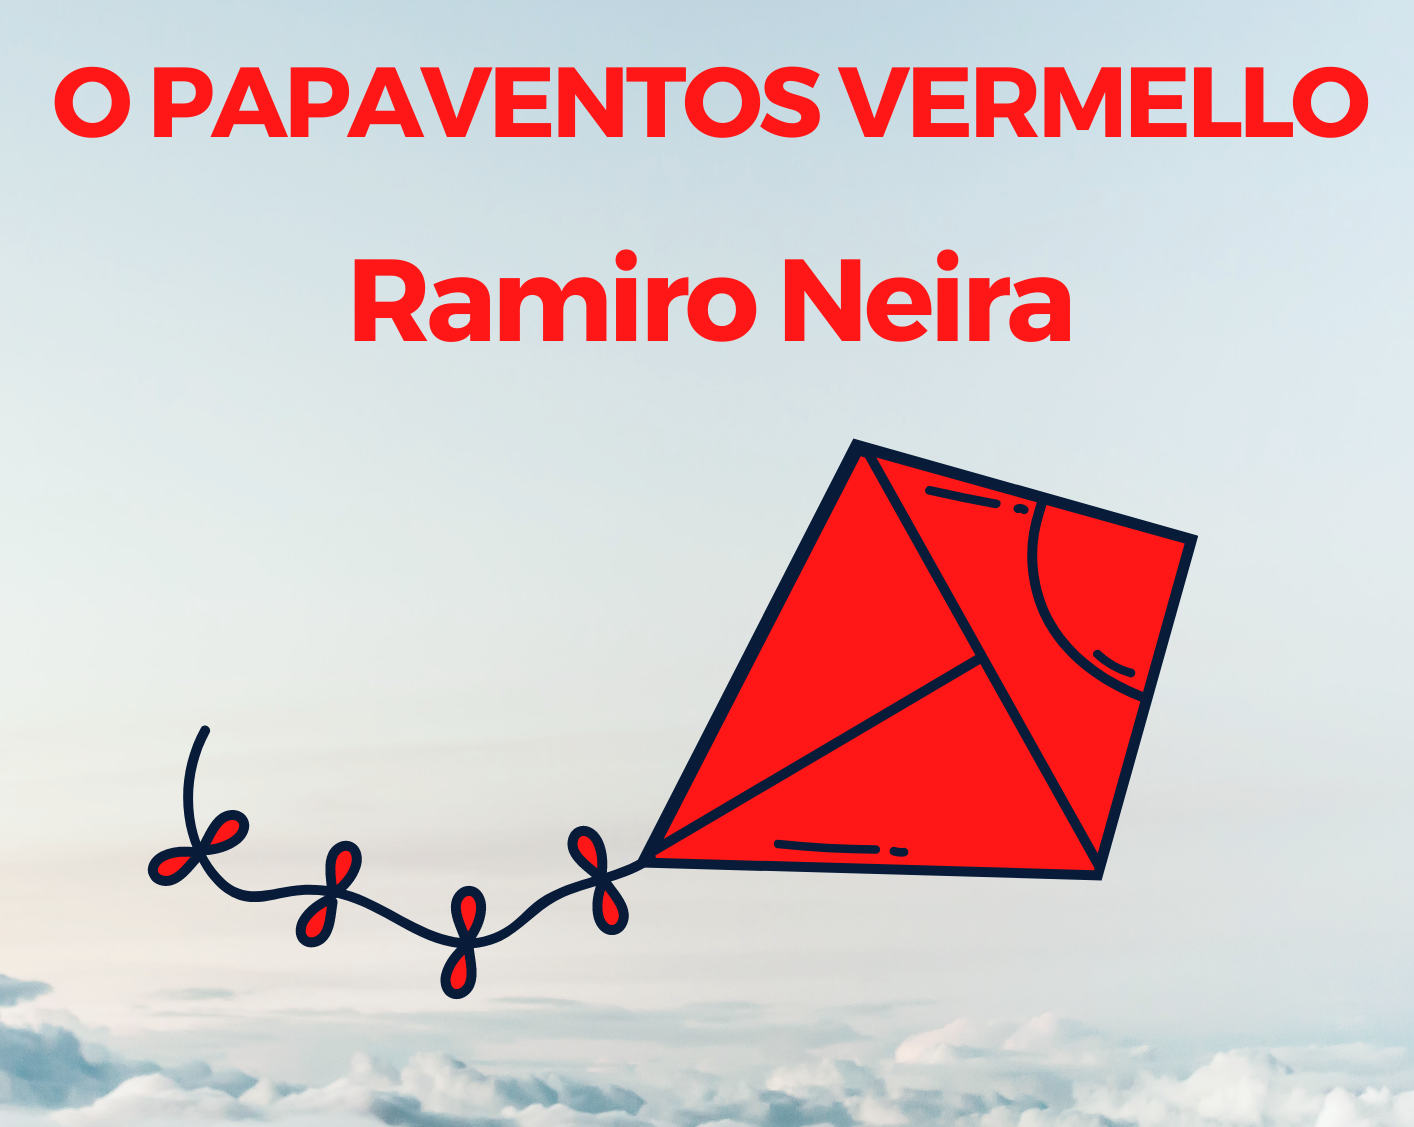 O papaventos vermello. Ramiro Neira